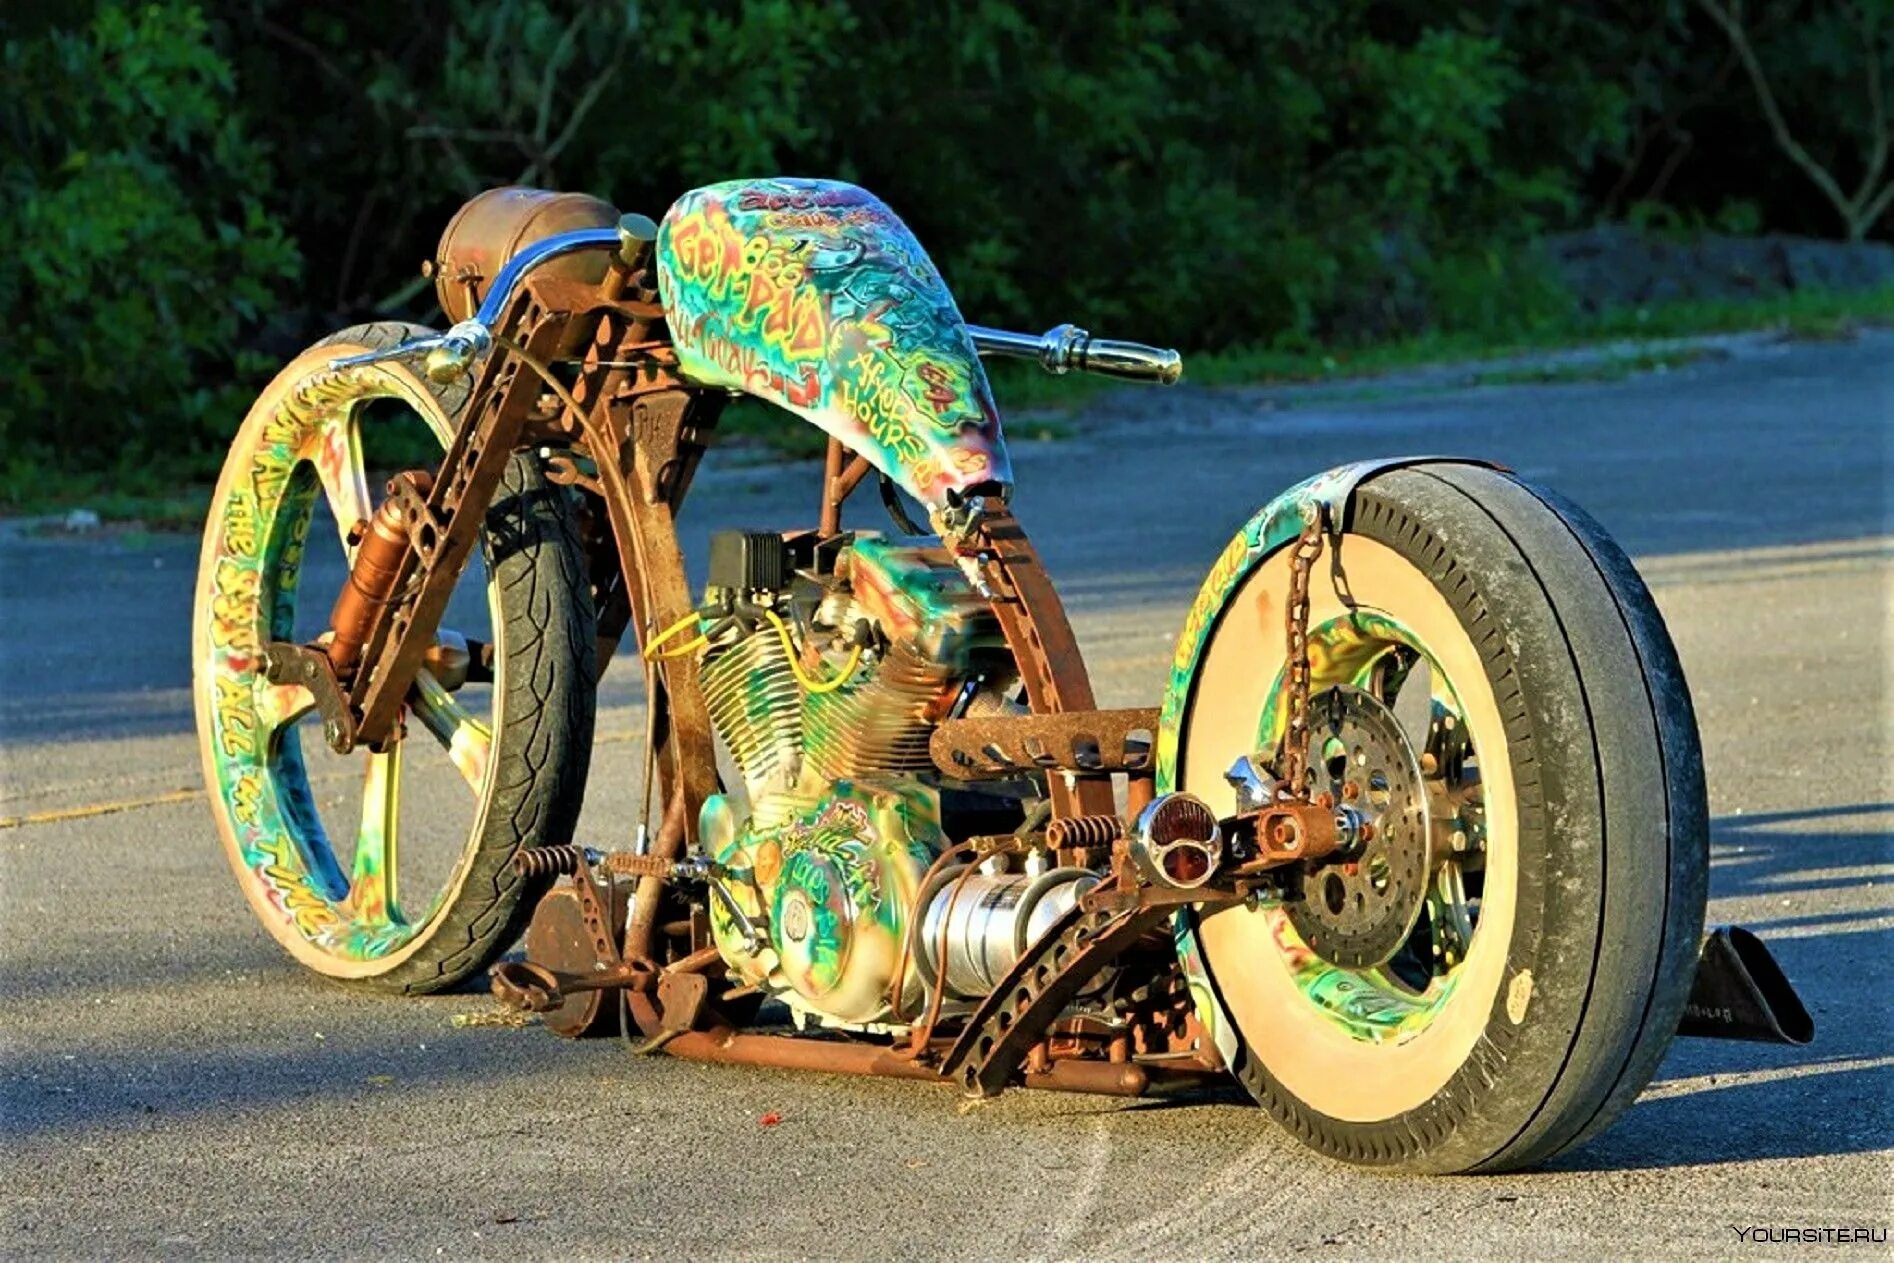 Аномалии custom. Рэт лук мотоцикл. Чоппер Рэт байк. Мотоцикл rat Rod. Мотоциклы в стиле Рэт кастом.